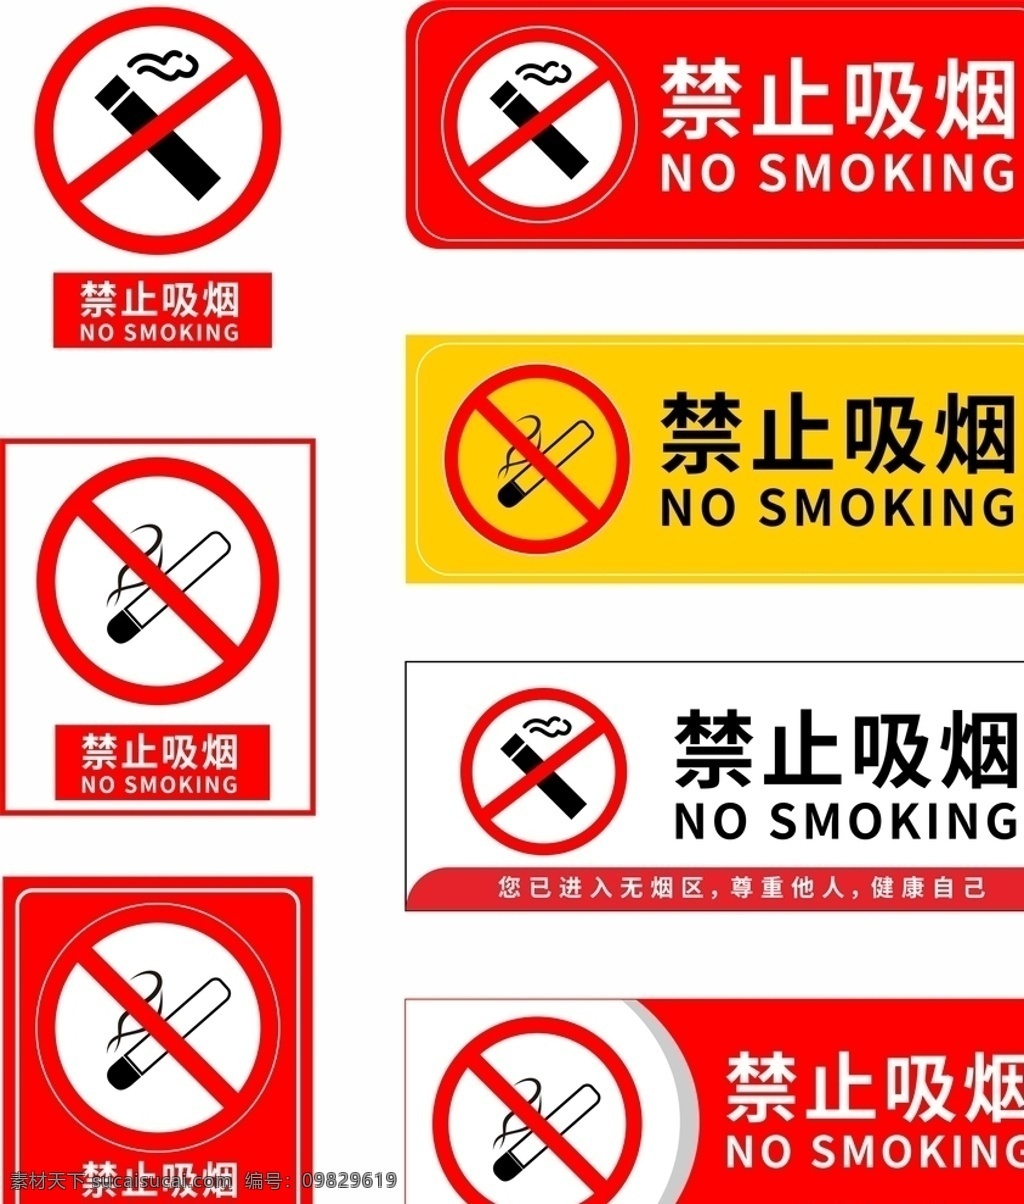 禁止吸烟标志 禁止吸烟样式 禁止吸烟模版 禁止吸烟牌 温馨提示标牌 温馨提示 请勿吸烟 请勿吸烟标志 请勿吸烟样式 请勿吸烟模版 请勿吸烟牌